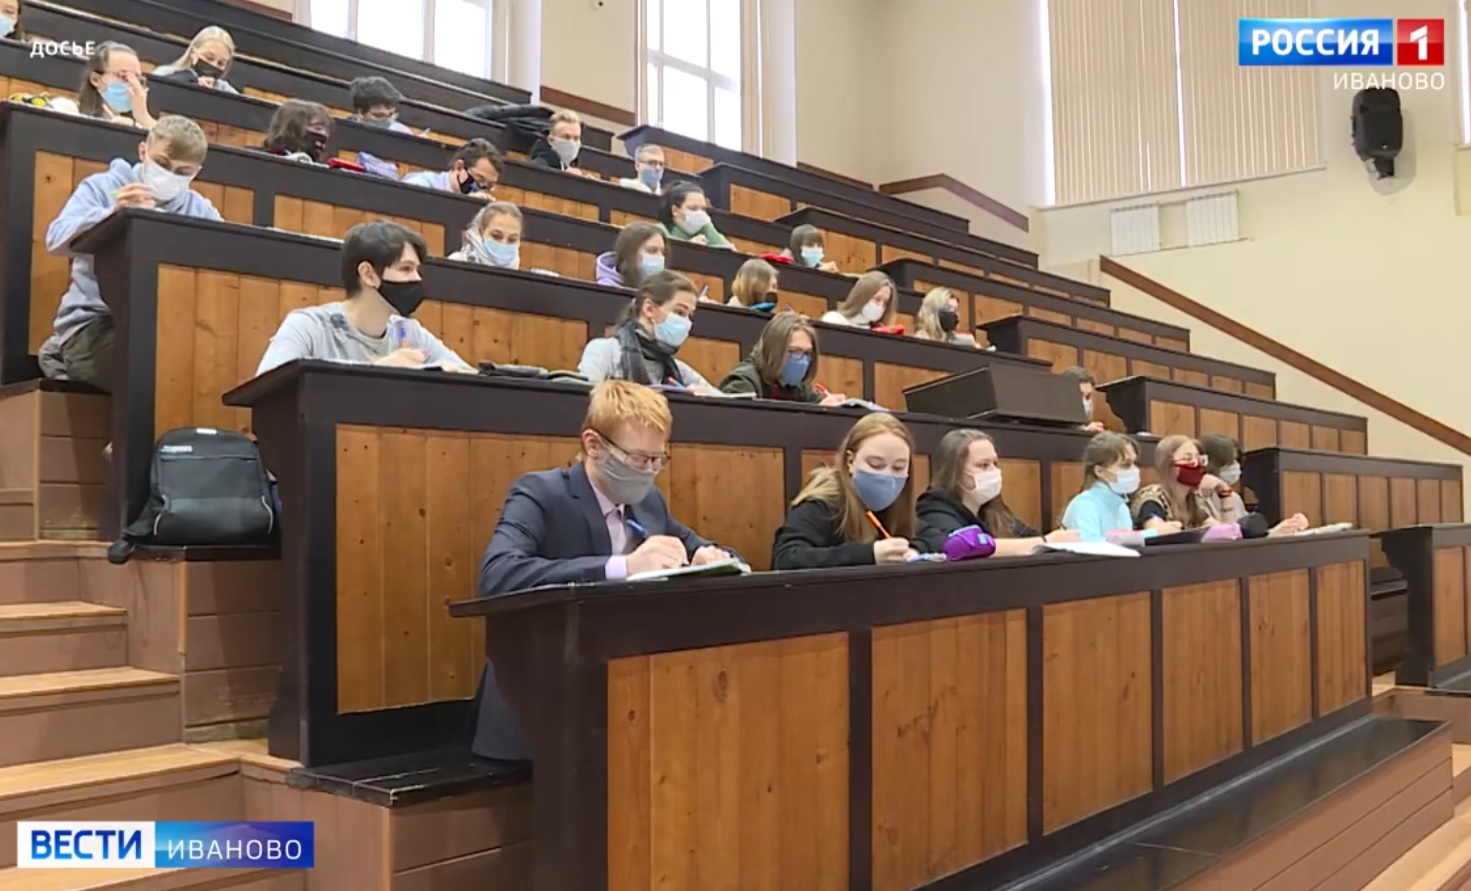 Родители почти 1000 студентов в Ивановской области получают пенсию в повышенном размере